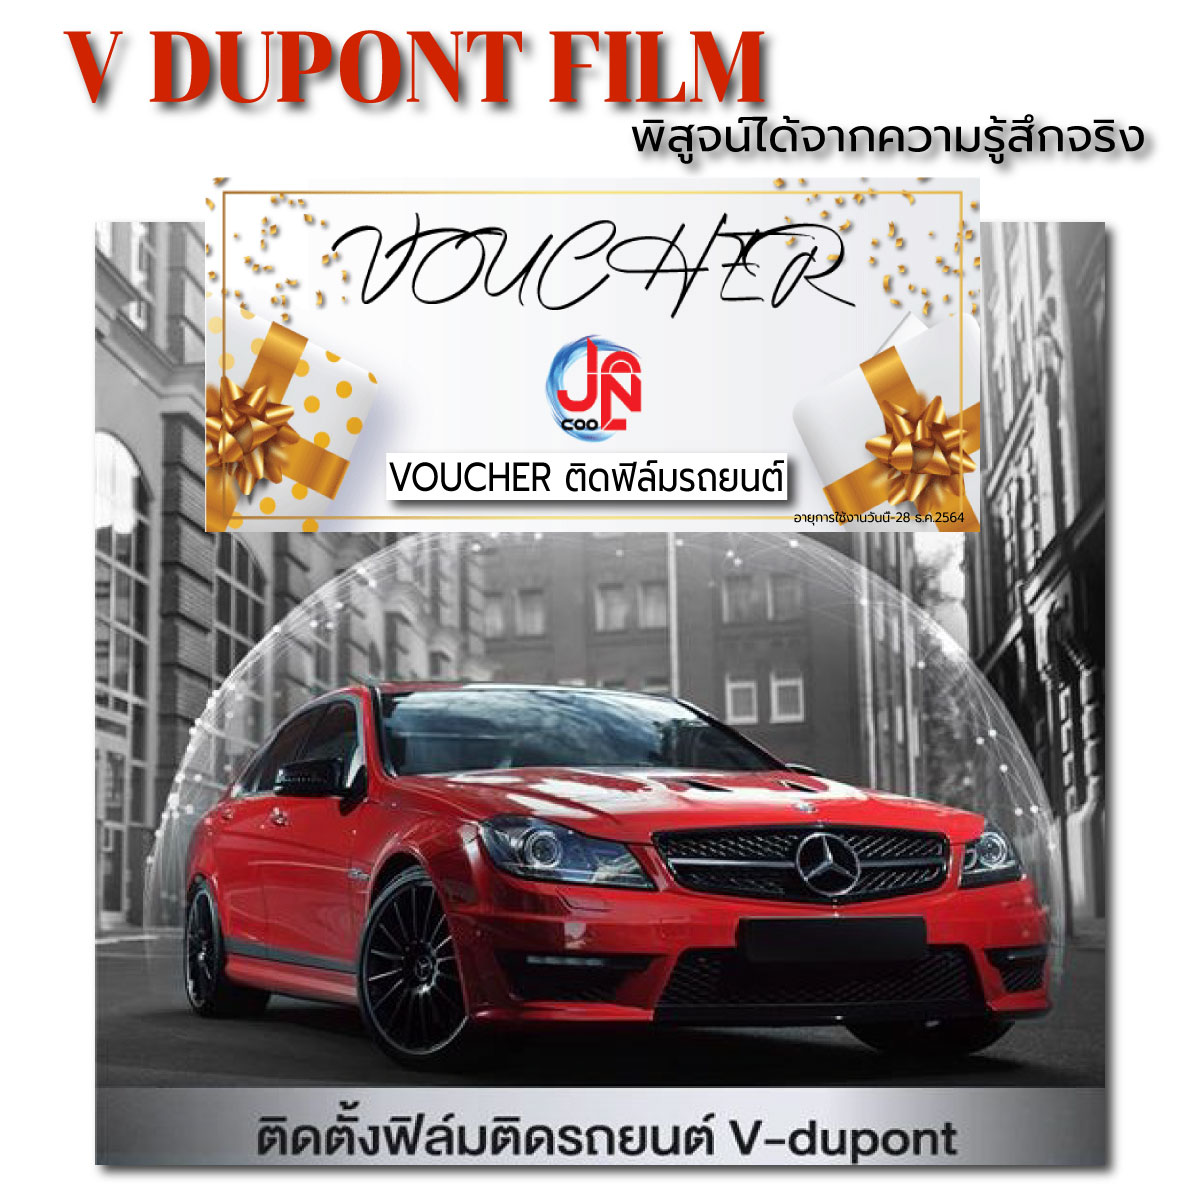 E-VOUCHER ติดฟิล์มติดรถยนต์ V-DUPONT รุ่น VAR ราคาพิเศษ